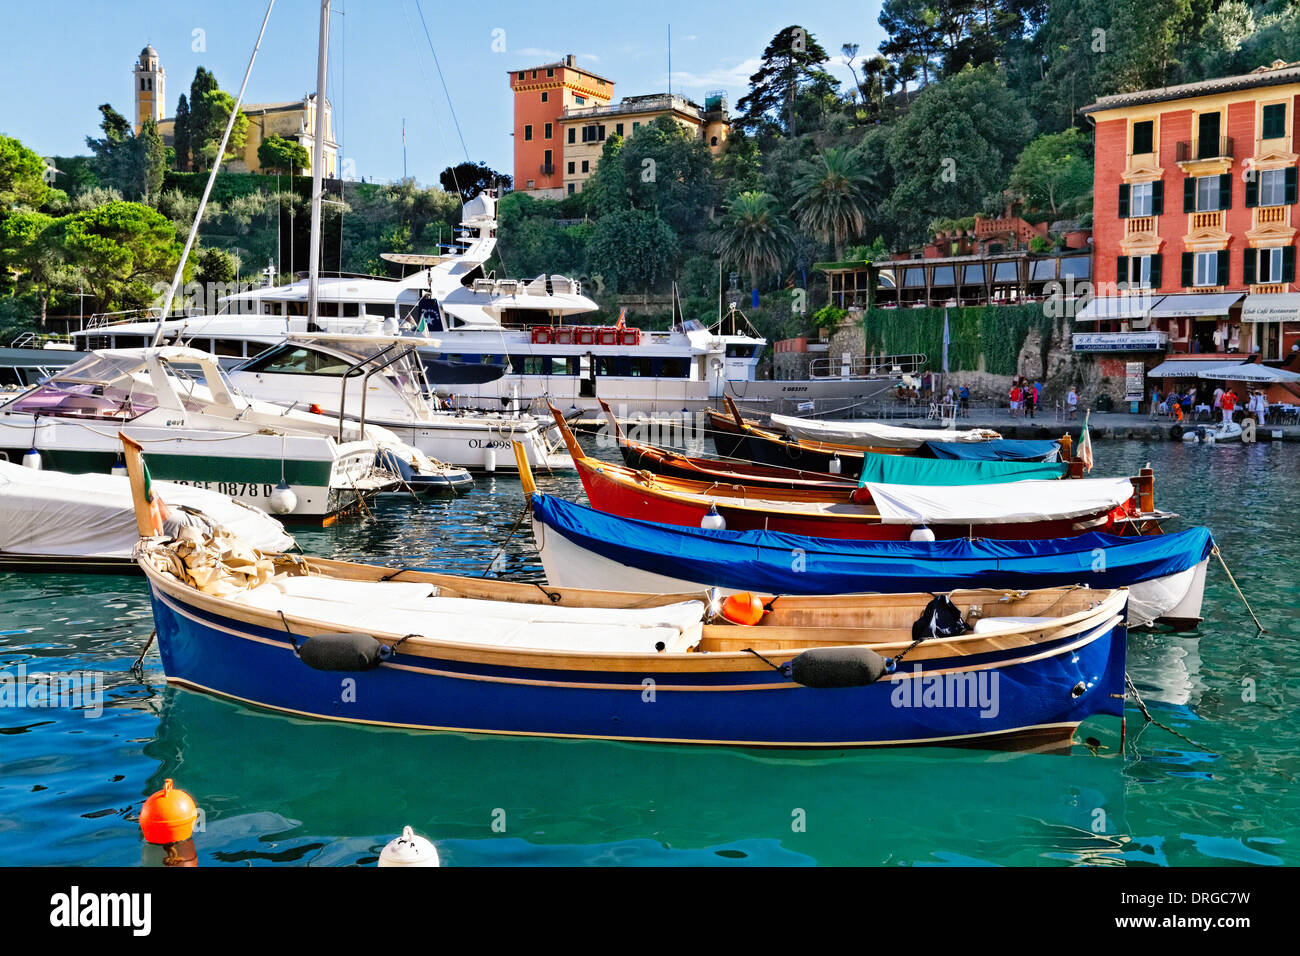 Bateaux dans le port intérieur de Portofino, ligurie, italie Banque D'Images